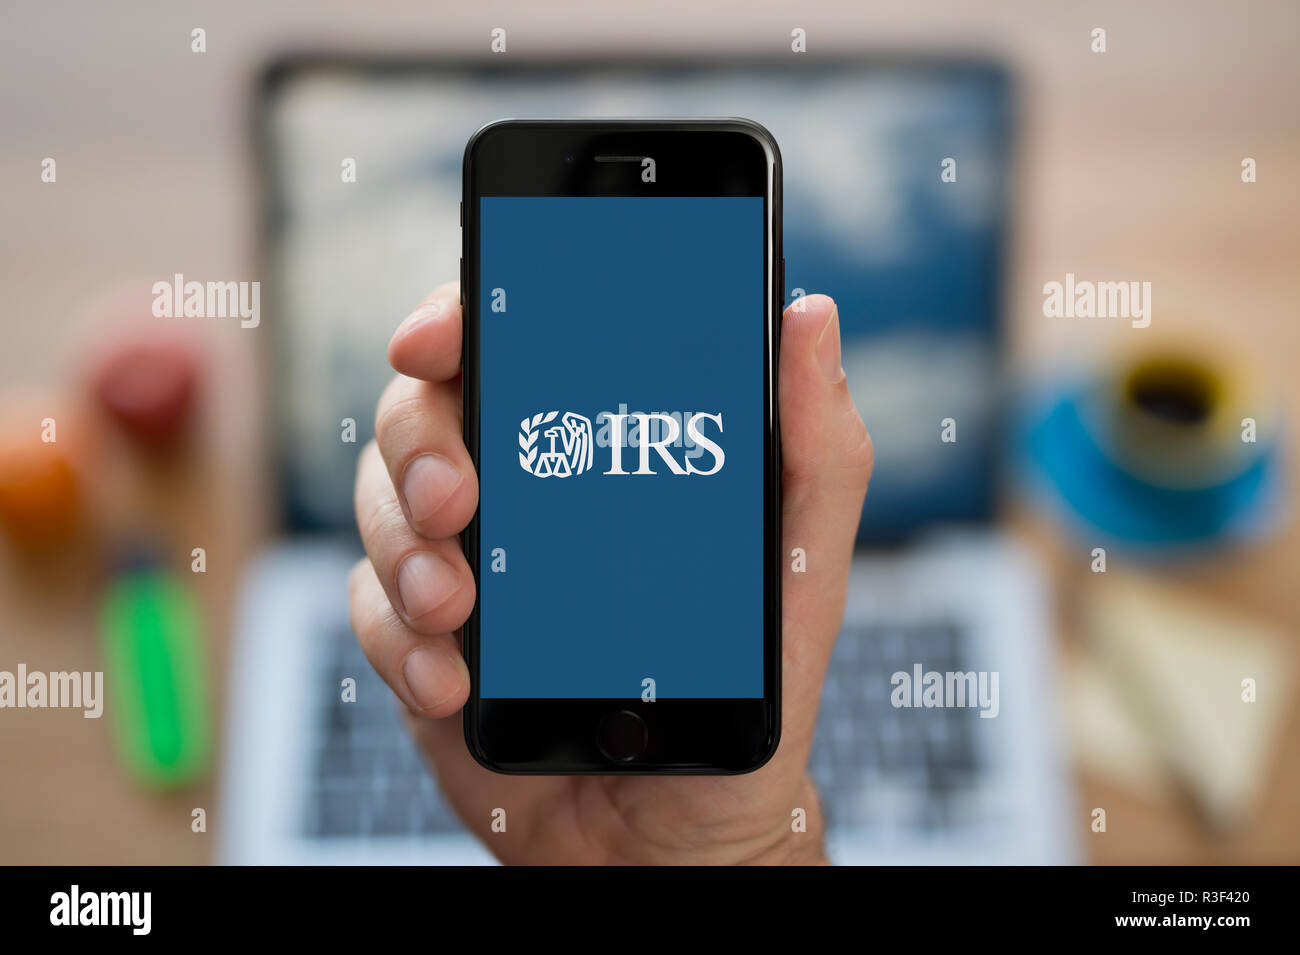 Un uomo guarda al suo iPhone che consente di visualizzare l'Internal Revenue Service IRS (logo), mentre se ne sta seduto alla sua scrivania per computer (solo uso editoriale). Foto Stock